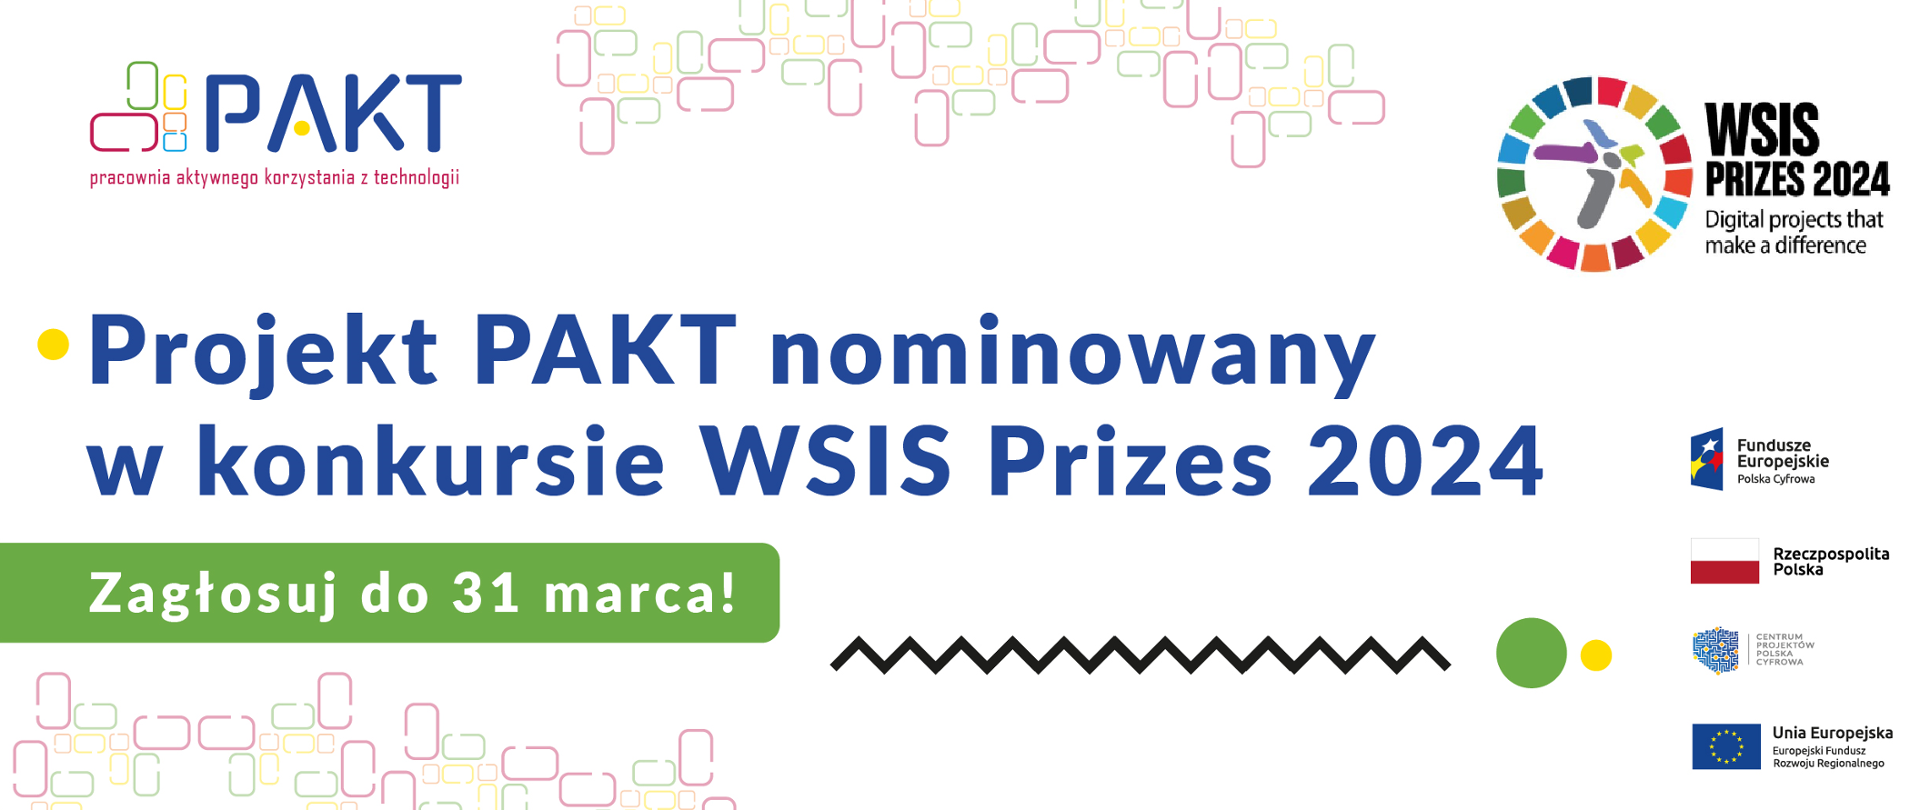 PAKT pracownia aktywnego korzystania z technologii. Projekt PAKT nominowany w konkursie WSIS Prizes 2024. Ostatnia szansa na zagłosowanie! Głosuj do 31 marca!